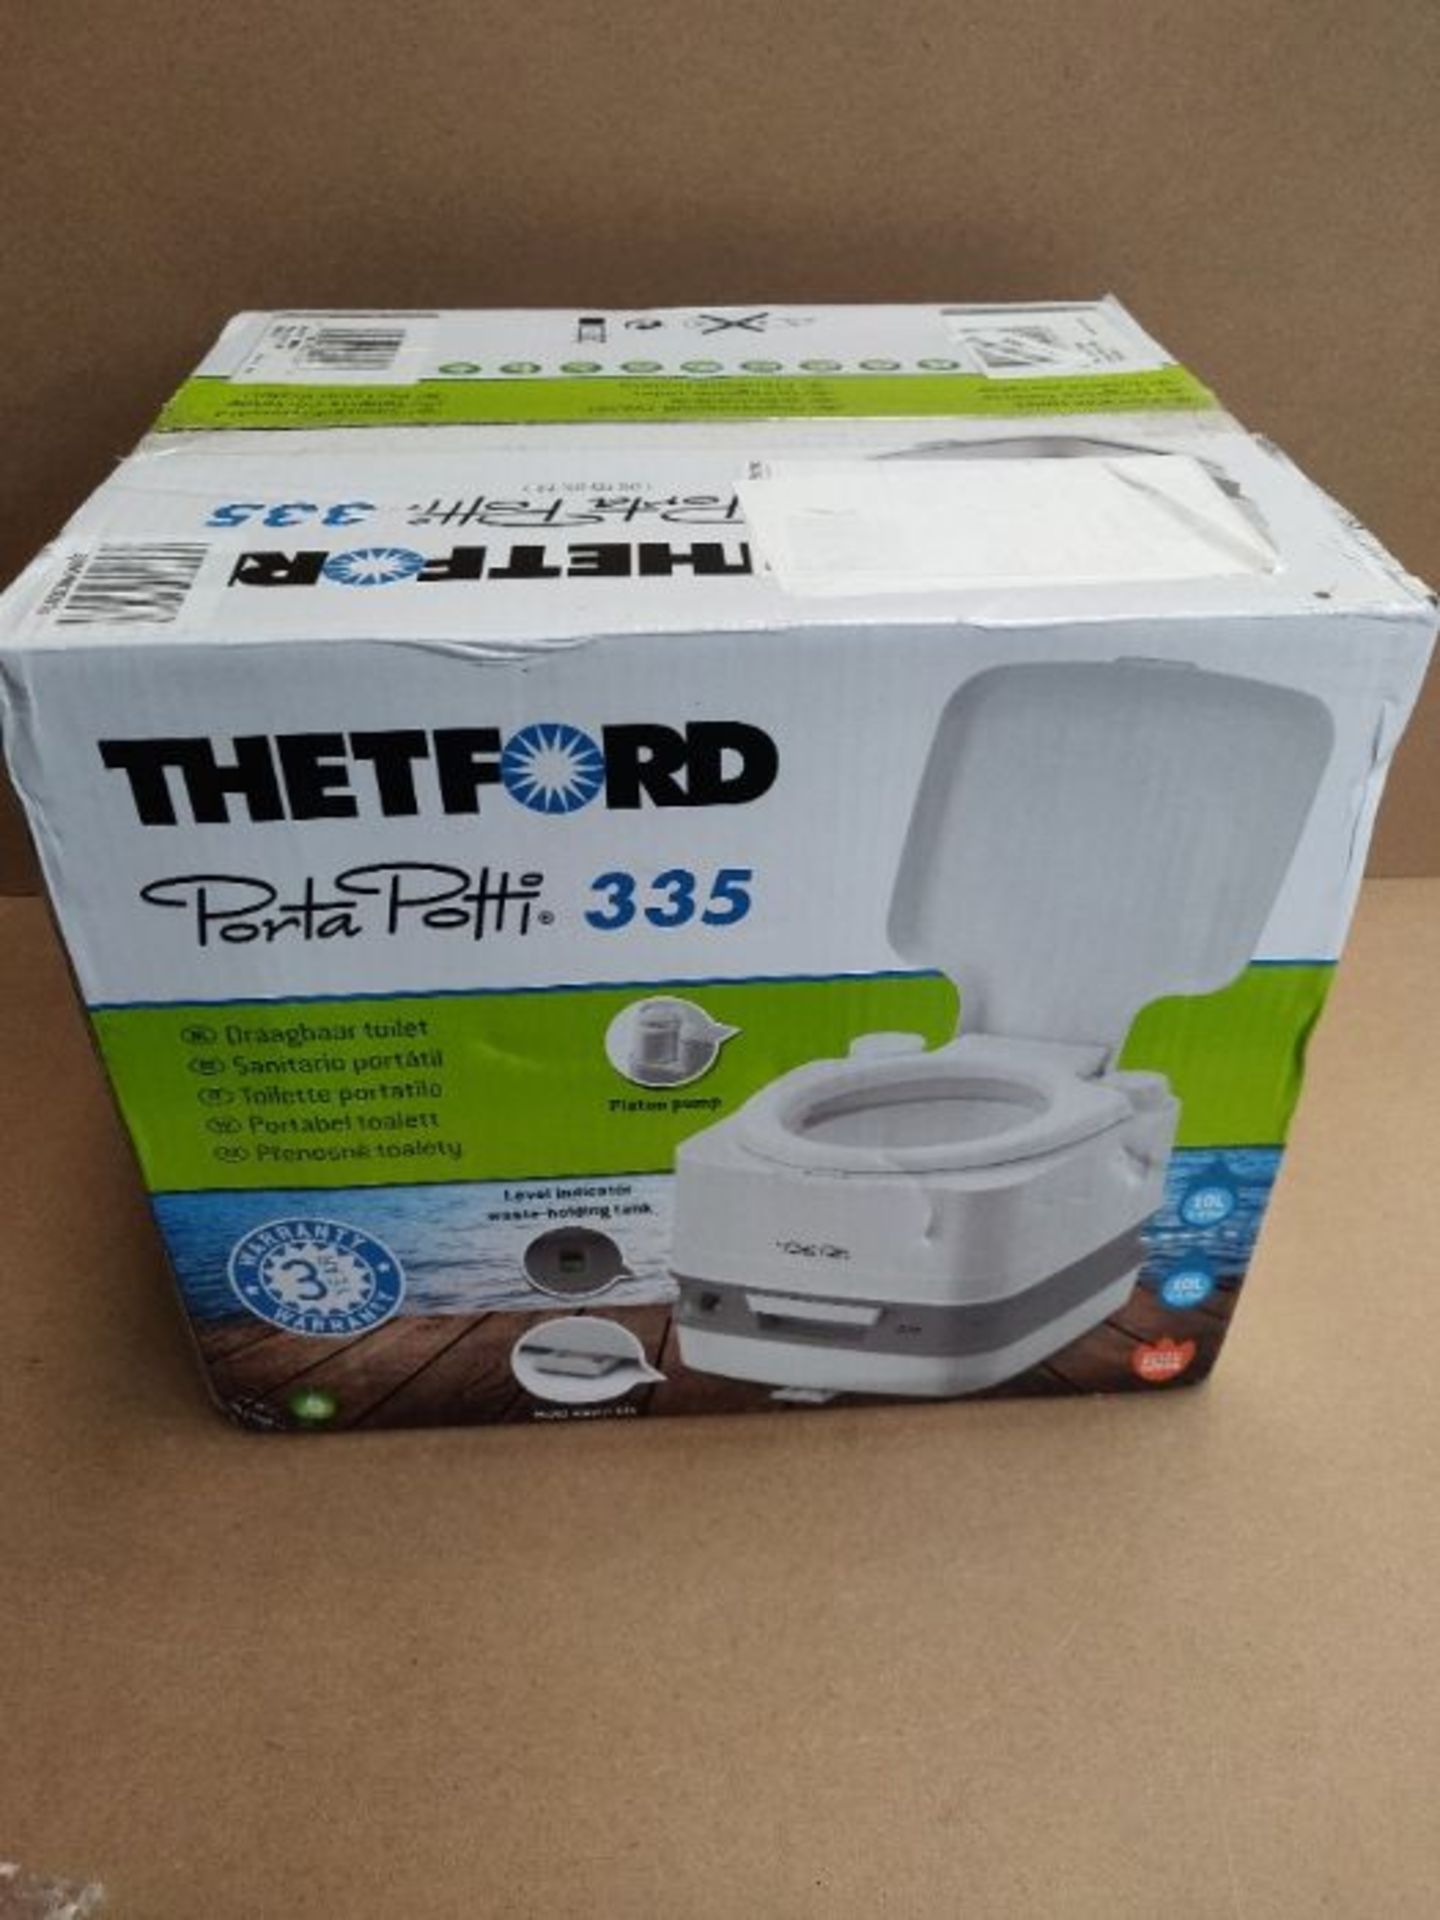 RRP £85.00 Thetford 92828 Porta Potti 335 Portable Toilet, White-Grey 313 x 342 x 382 mm - Image 2 of 3